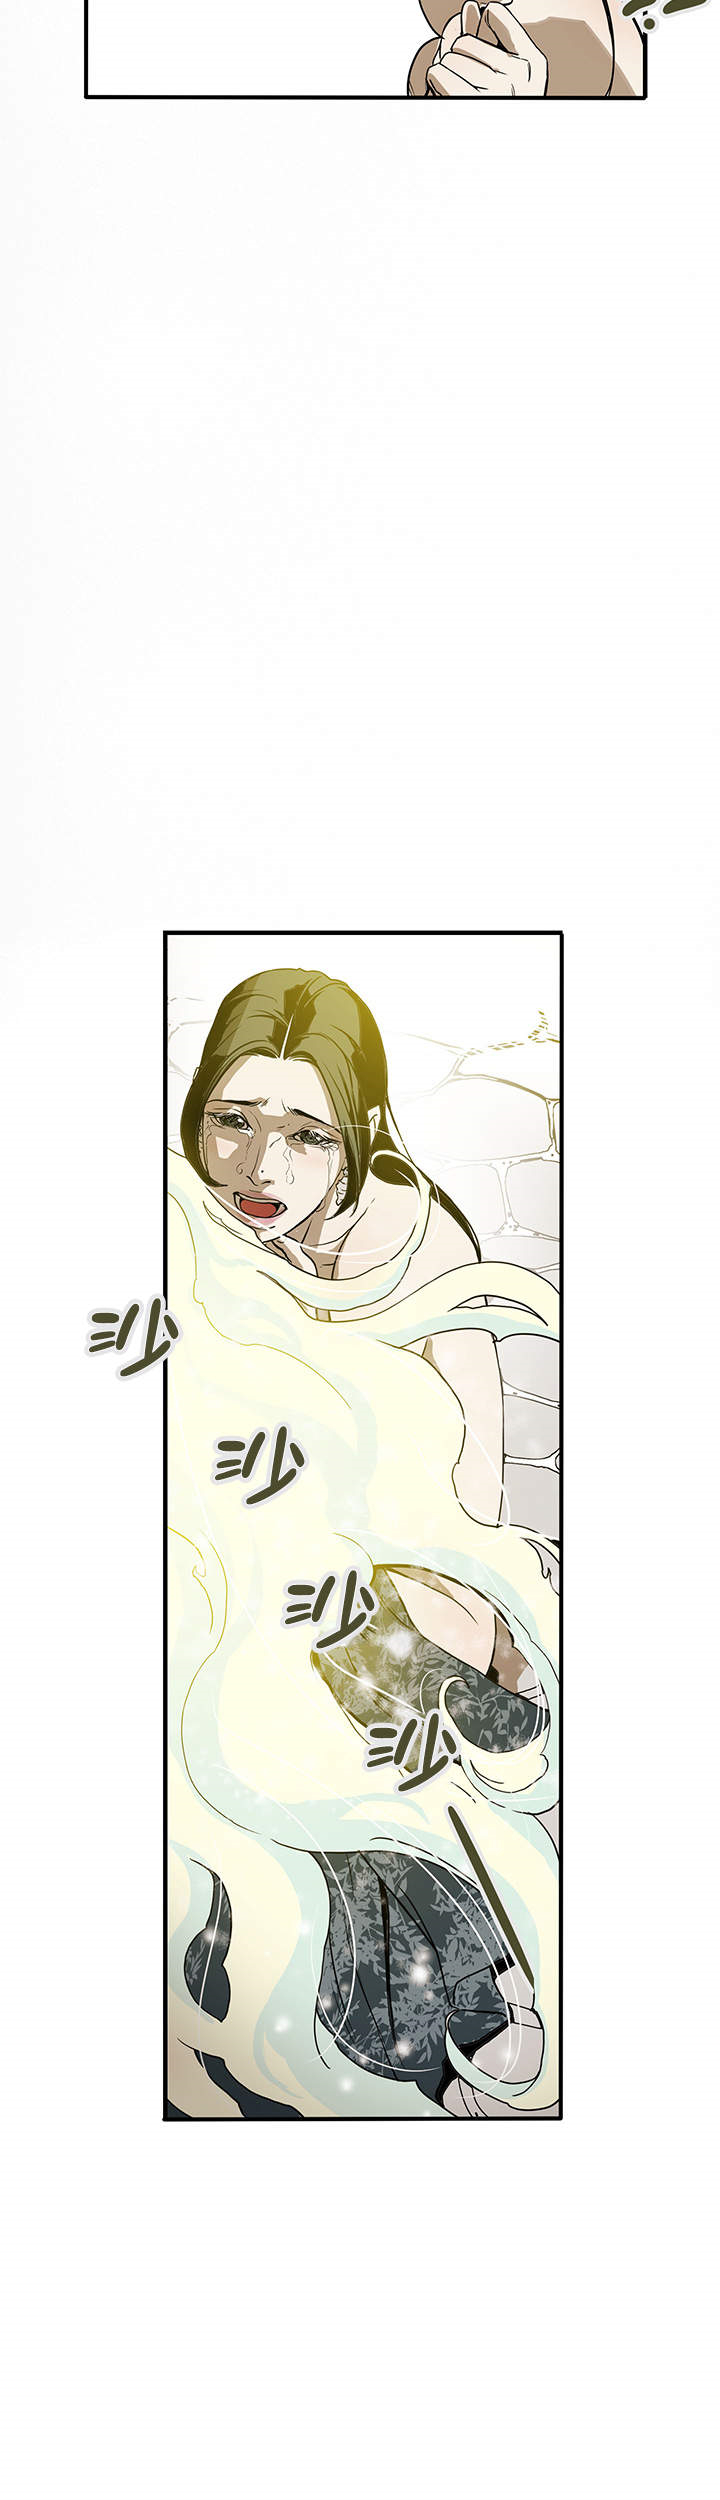 《爱自己》— 韩国漫画 — 全文在线阅读